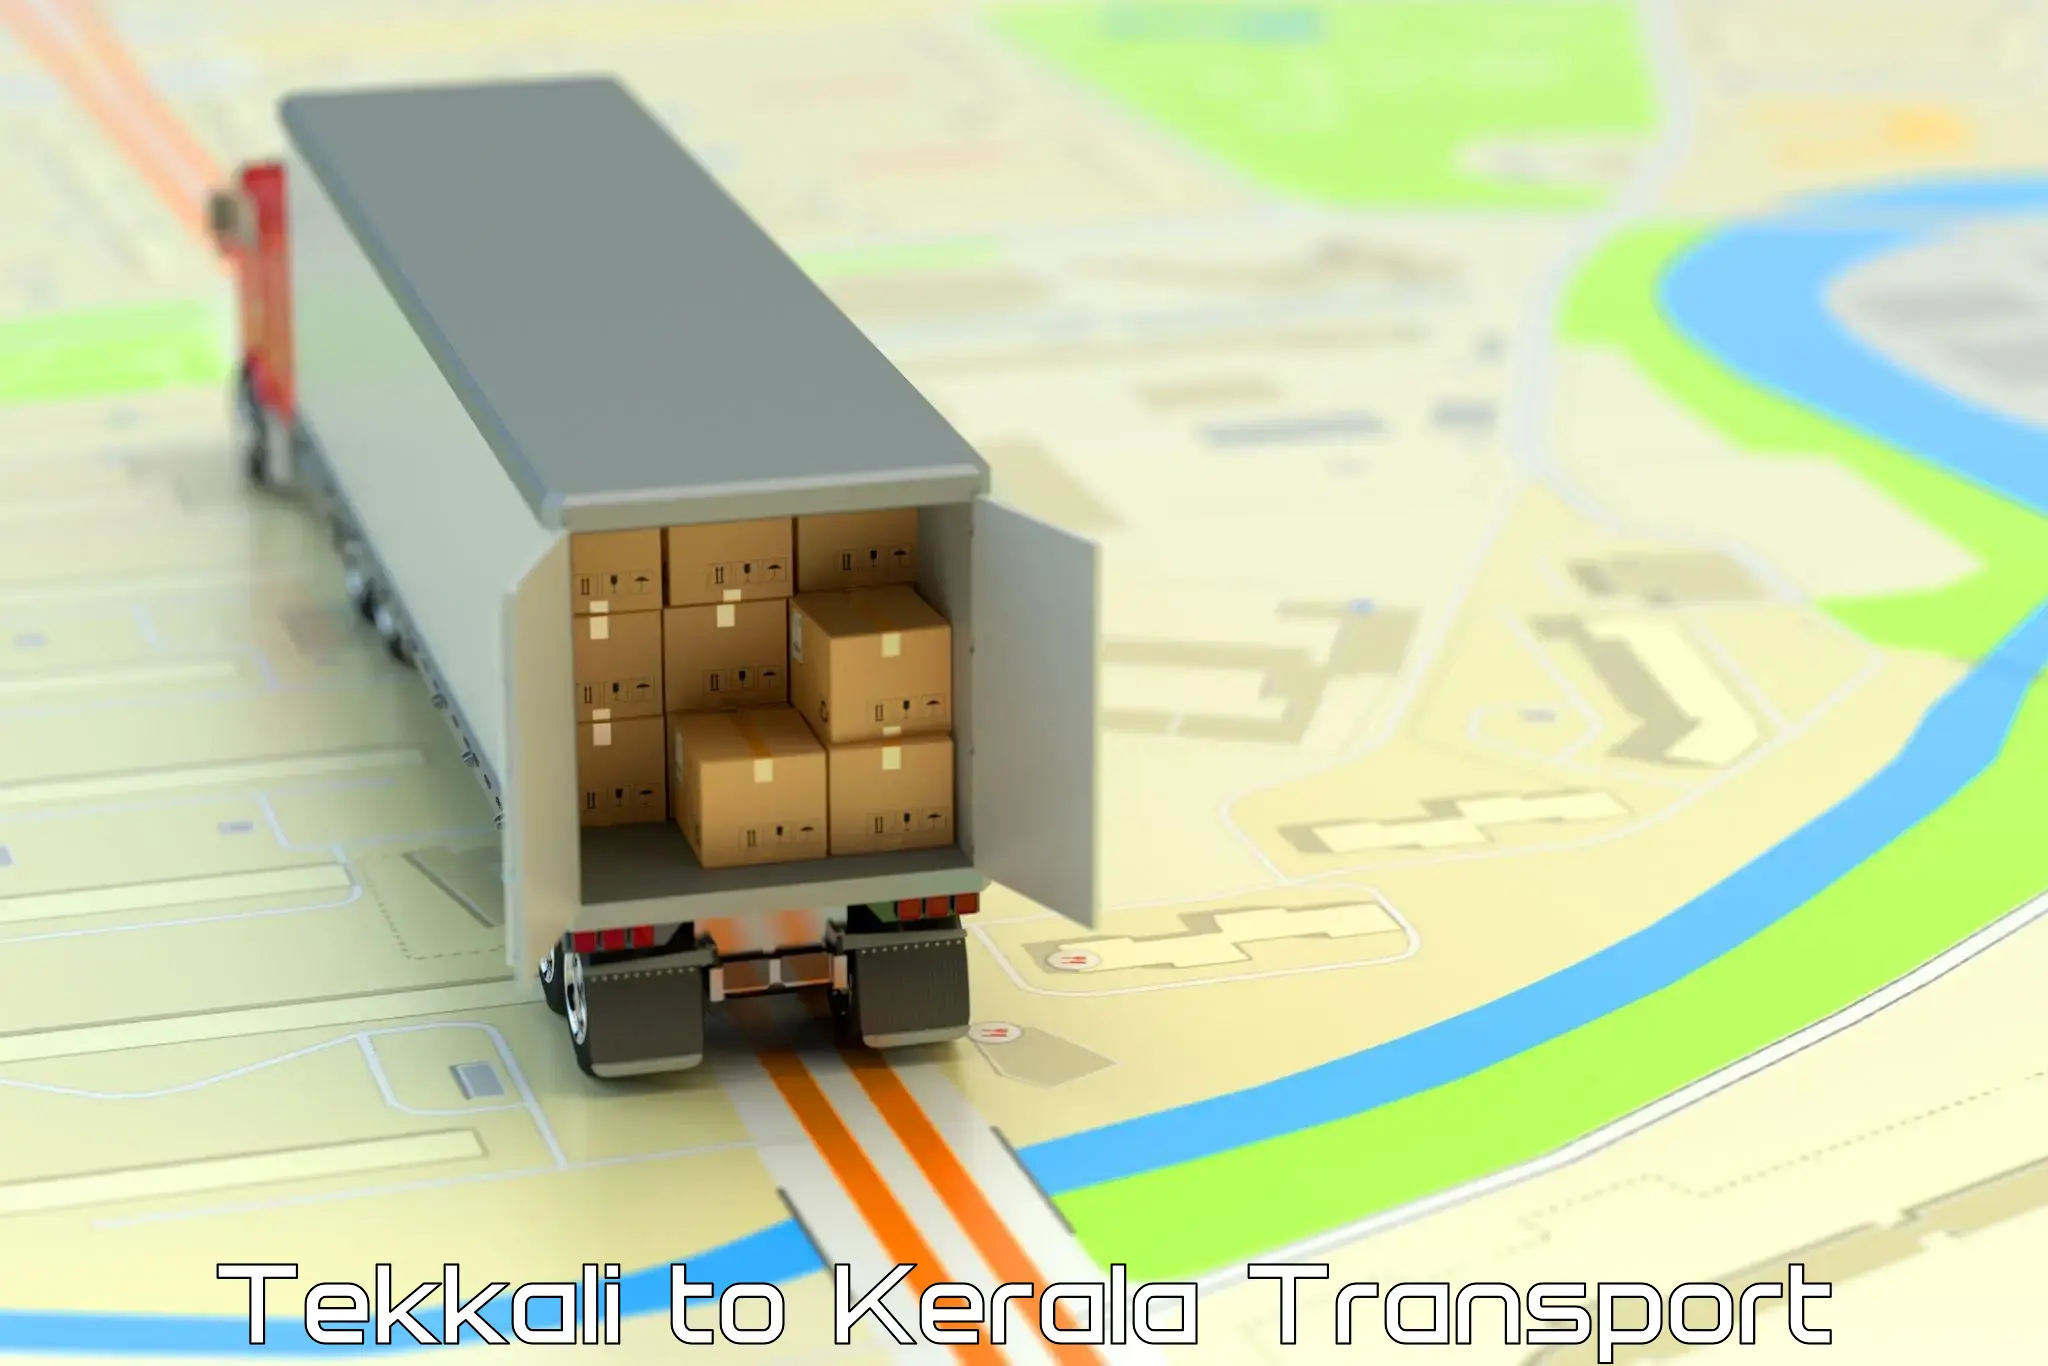 Daily parcel service transport Tekkali to Kallikkad